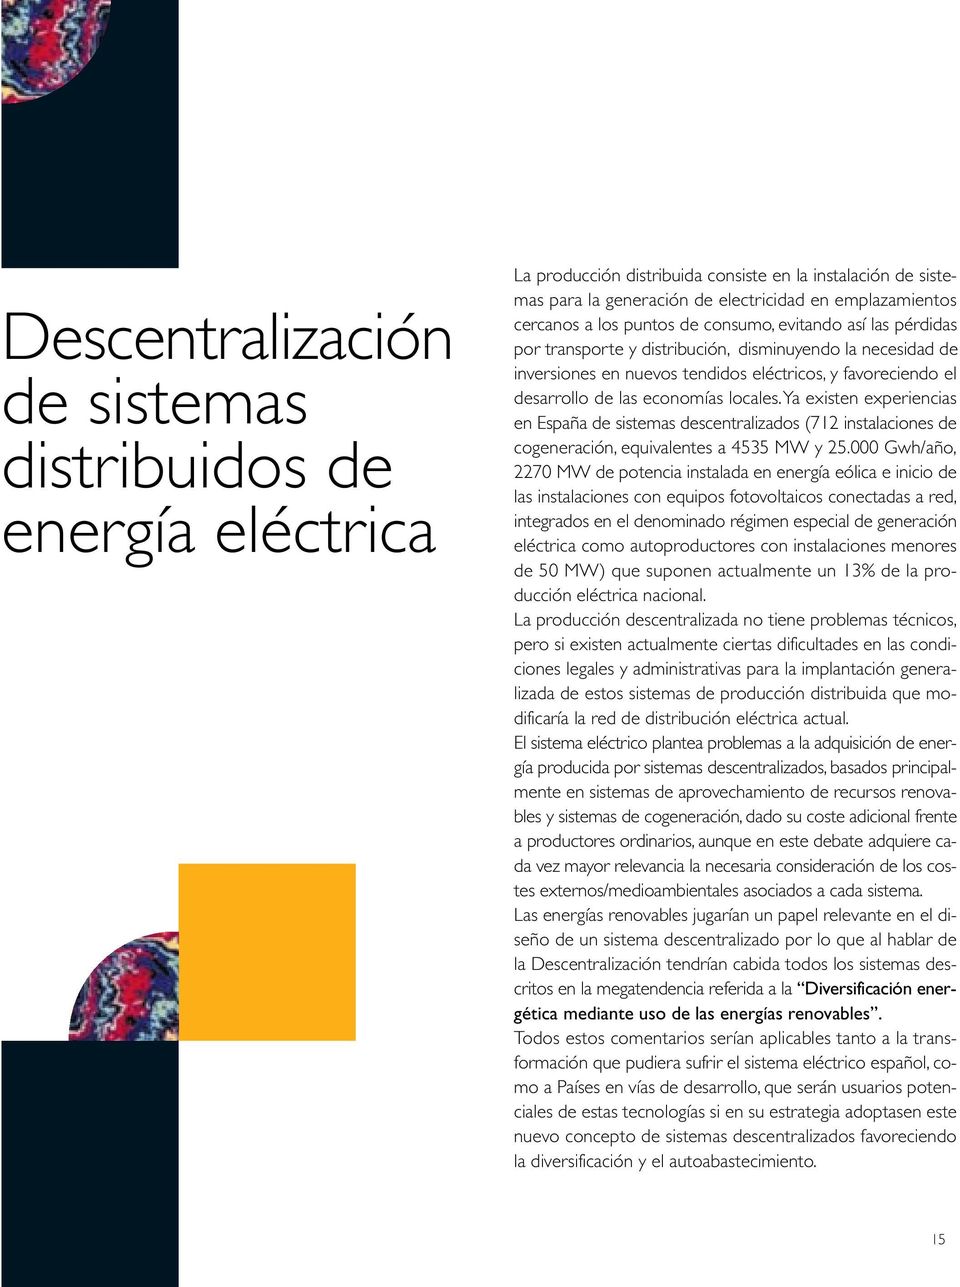 locales.ya existen experiencias en España de sistemas descentralizados (712 instalaciones de cogeneración, equivalentes a 4535 MW y 25.